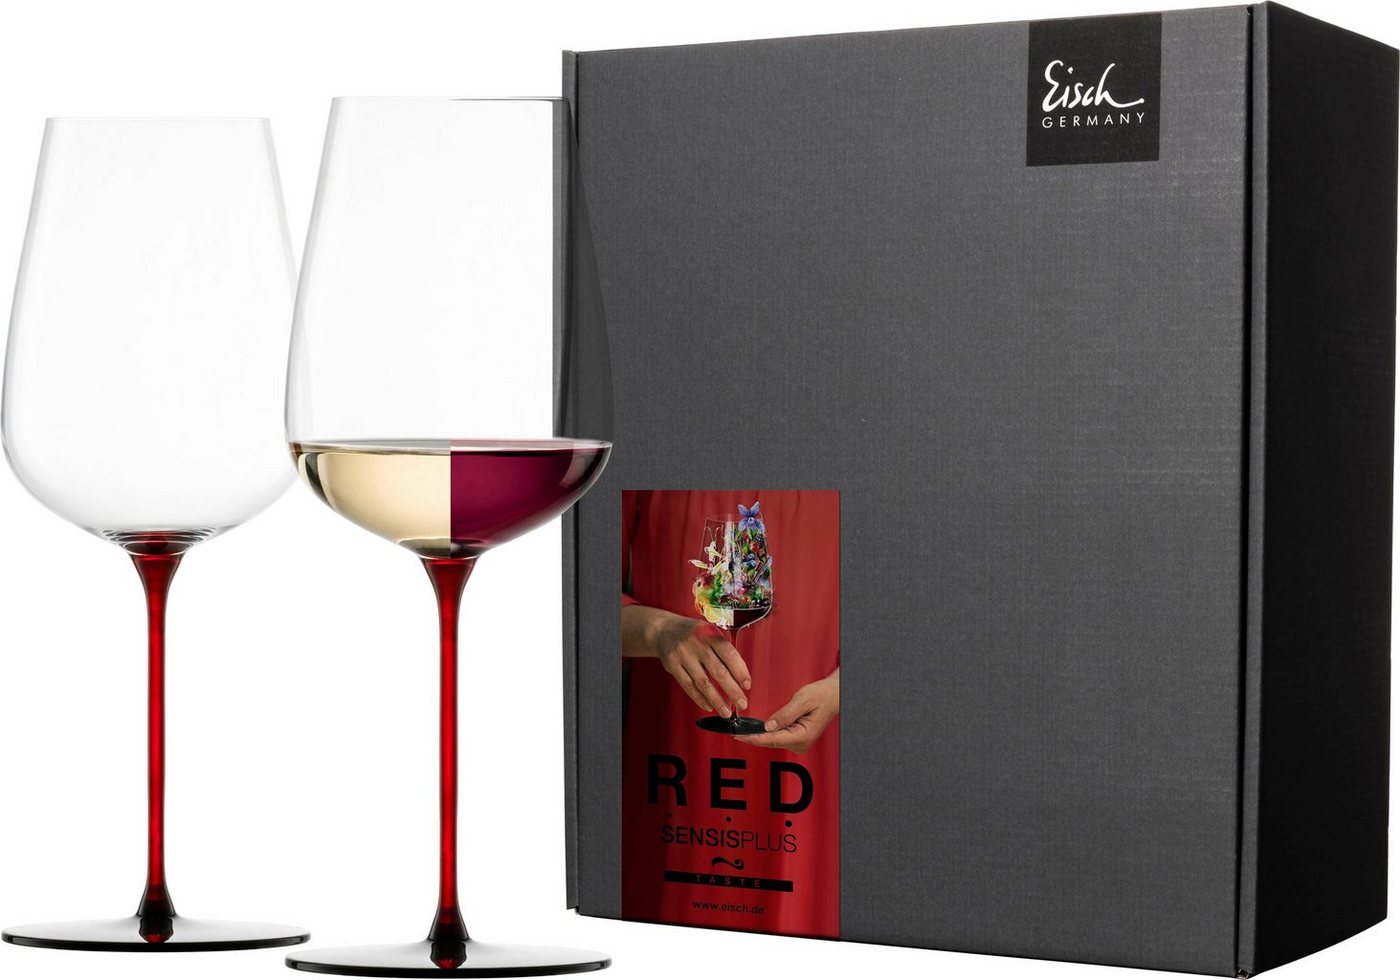 Eisch Weinglas RED SENSISPLUS, Kristallglas, 580 ml, 2-teilig, Made in Germany von Eisch